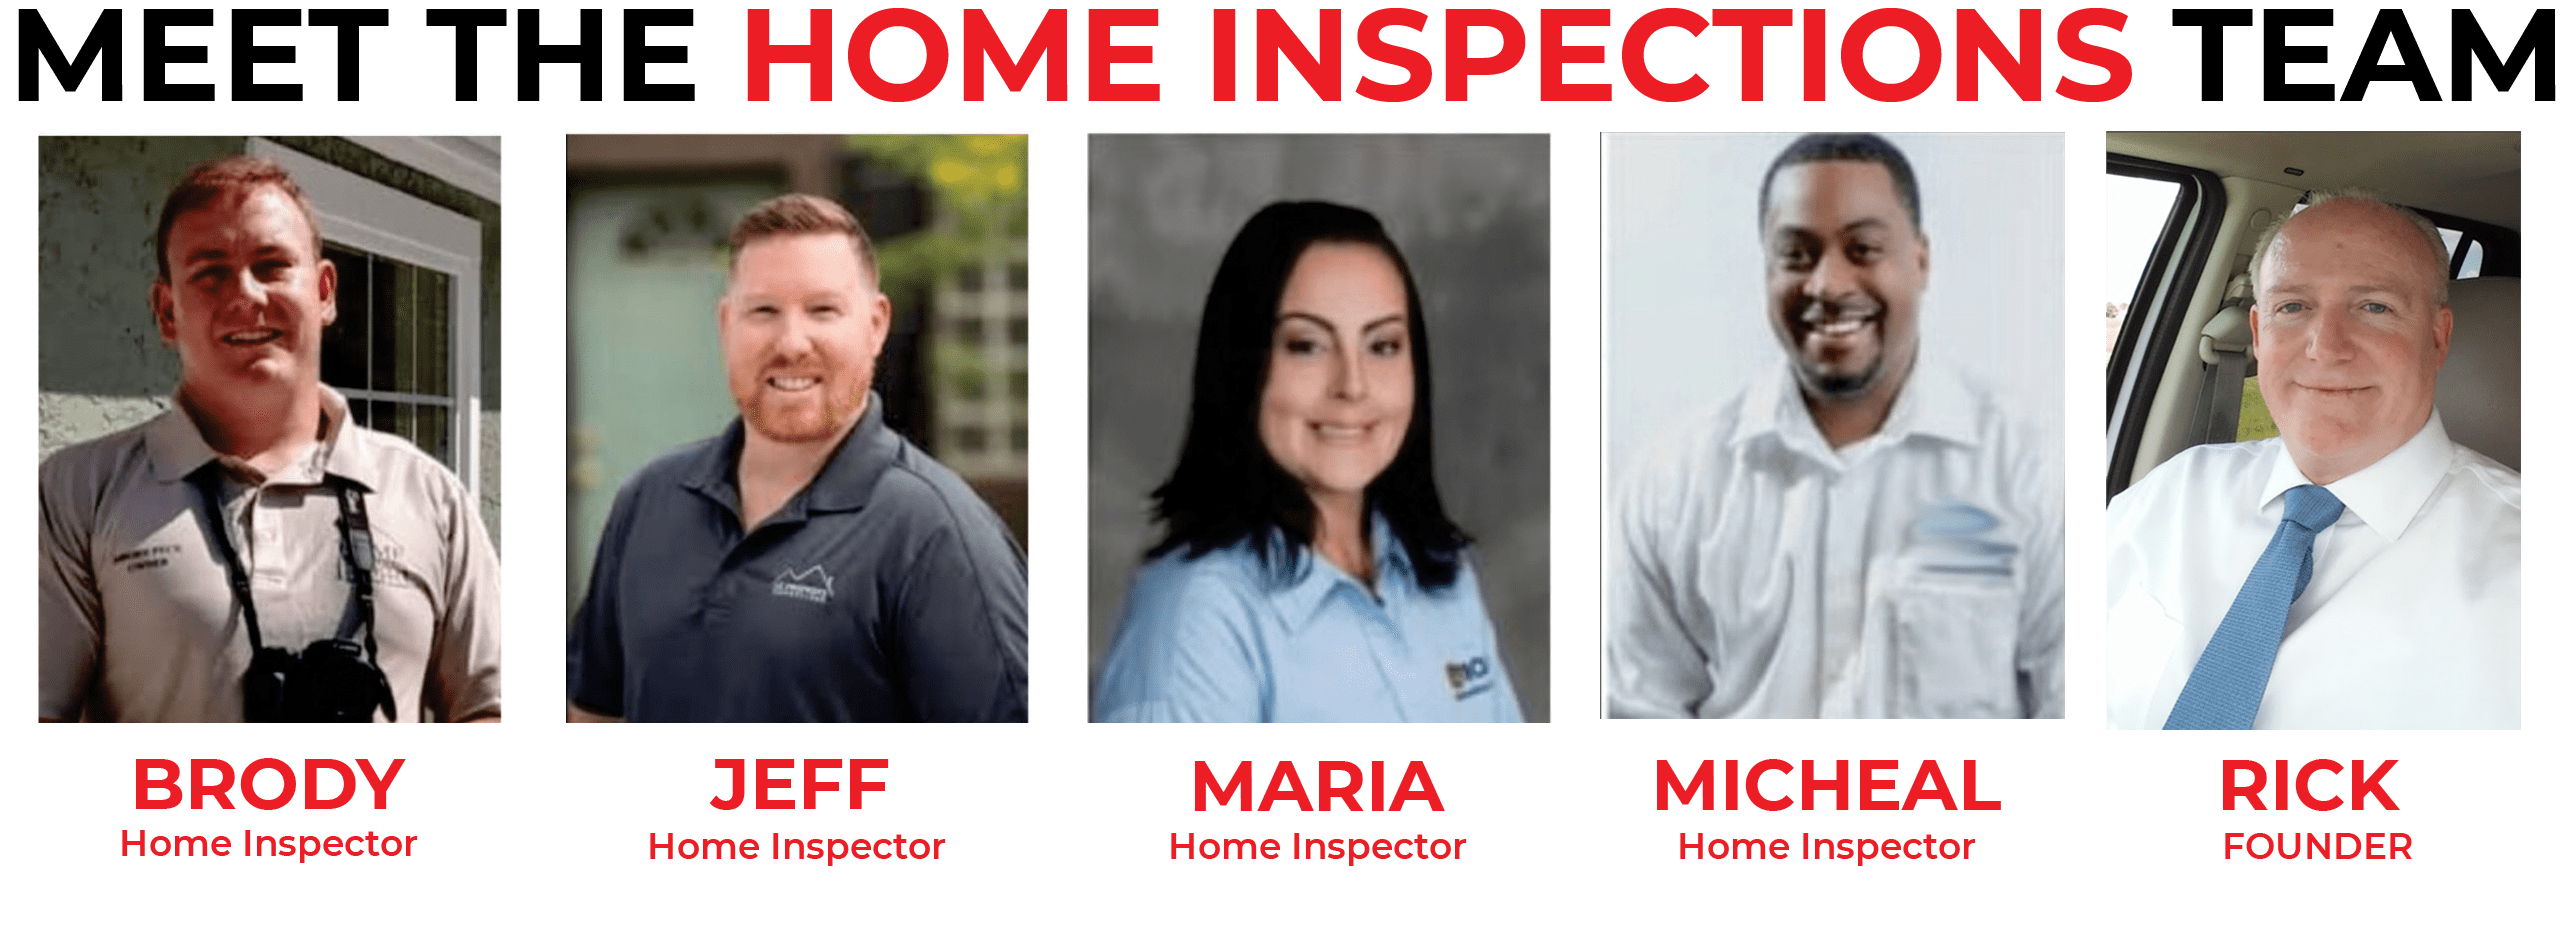 Home inspection orlando team